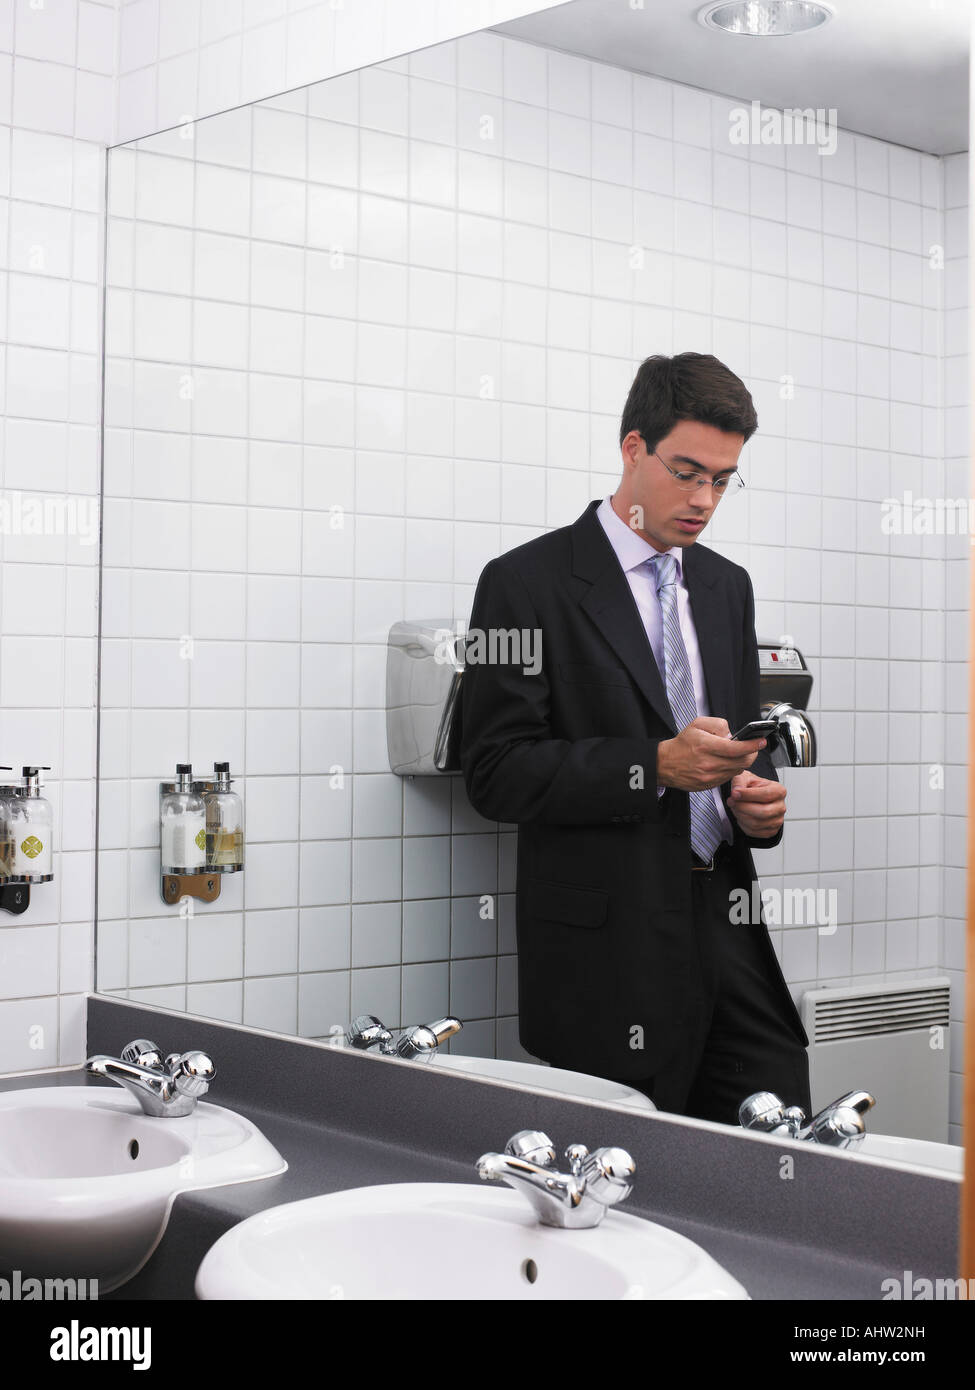 Bureau de l'homme reflétée dans un miroir de toilette à l'aide de mobile phone Banque D'Images